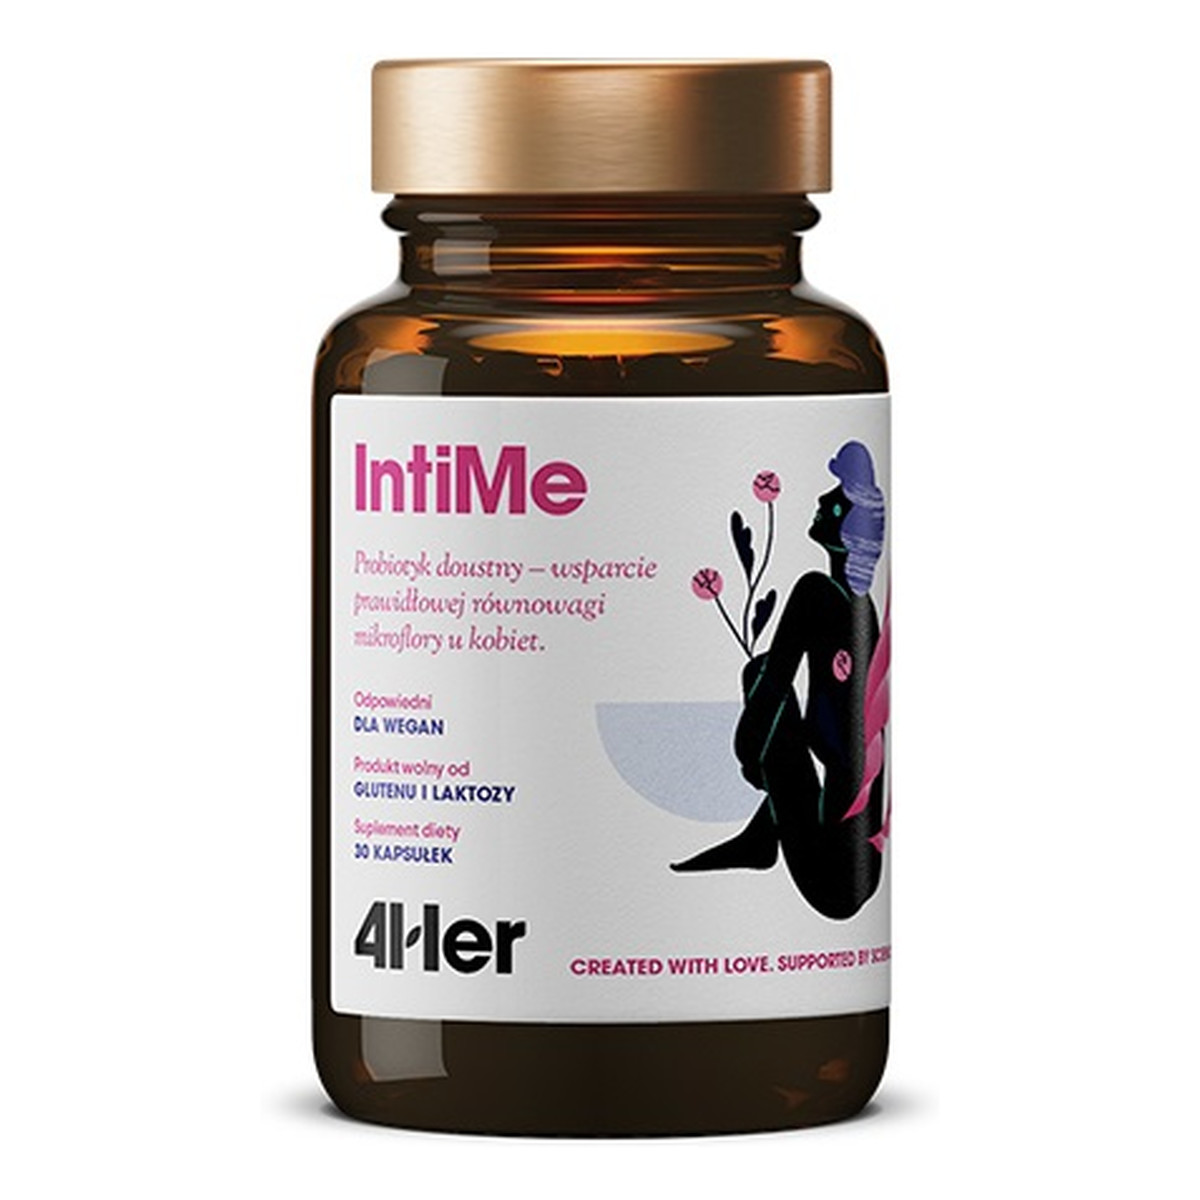 HealthLabs 4her intime probiotyk doustny wsparcie prawidłowej równowagi mikroflory u kobiet suplement diety 30 kapsułek